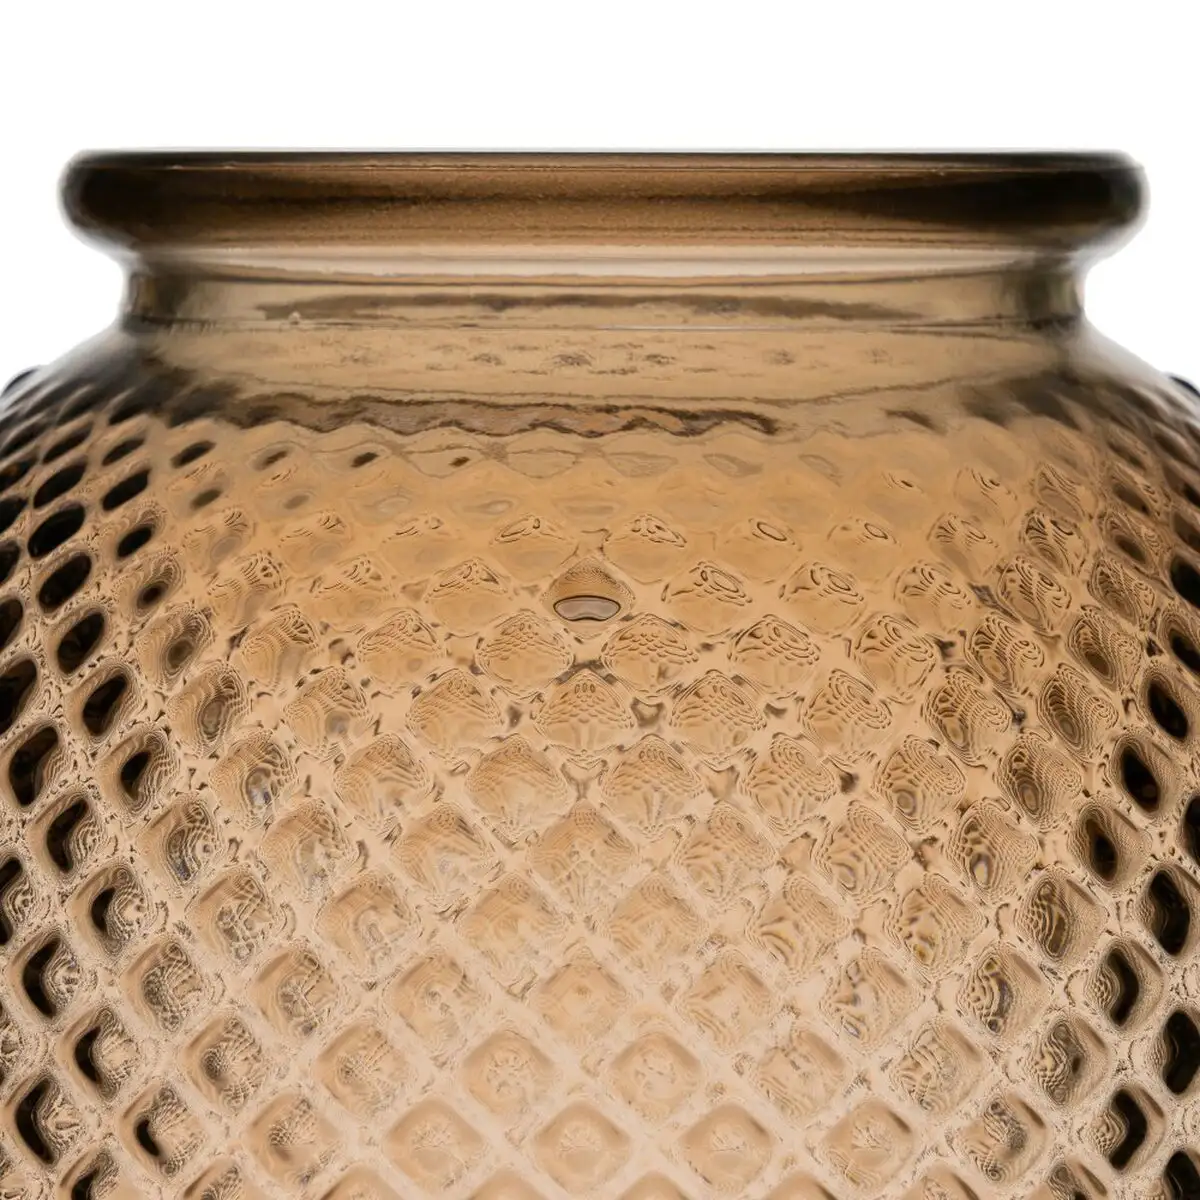 Vase verre recycle 24 x 24 x 24 cm caramel_2114. DIAYTAR SENEGAL - L'Art de Magasiner sans Frontières. Parcourez notre vaste sélection d'articles et trouvez tout ce dont vous avez besoin, du chic à l'authentique, du moderne au traditionnel.